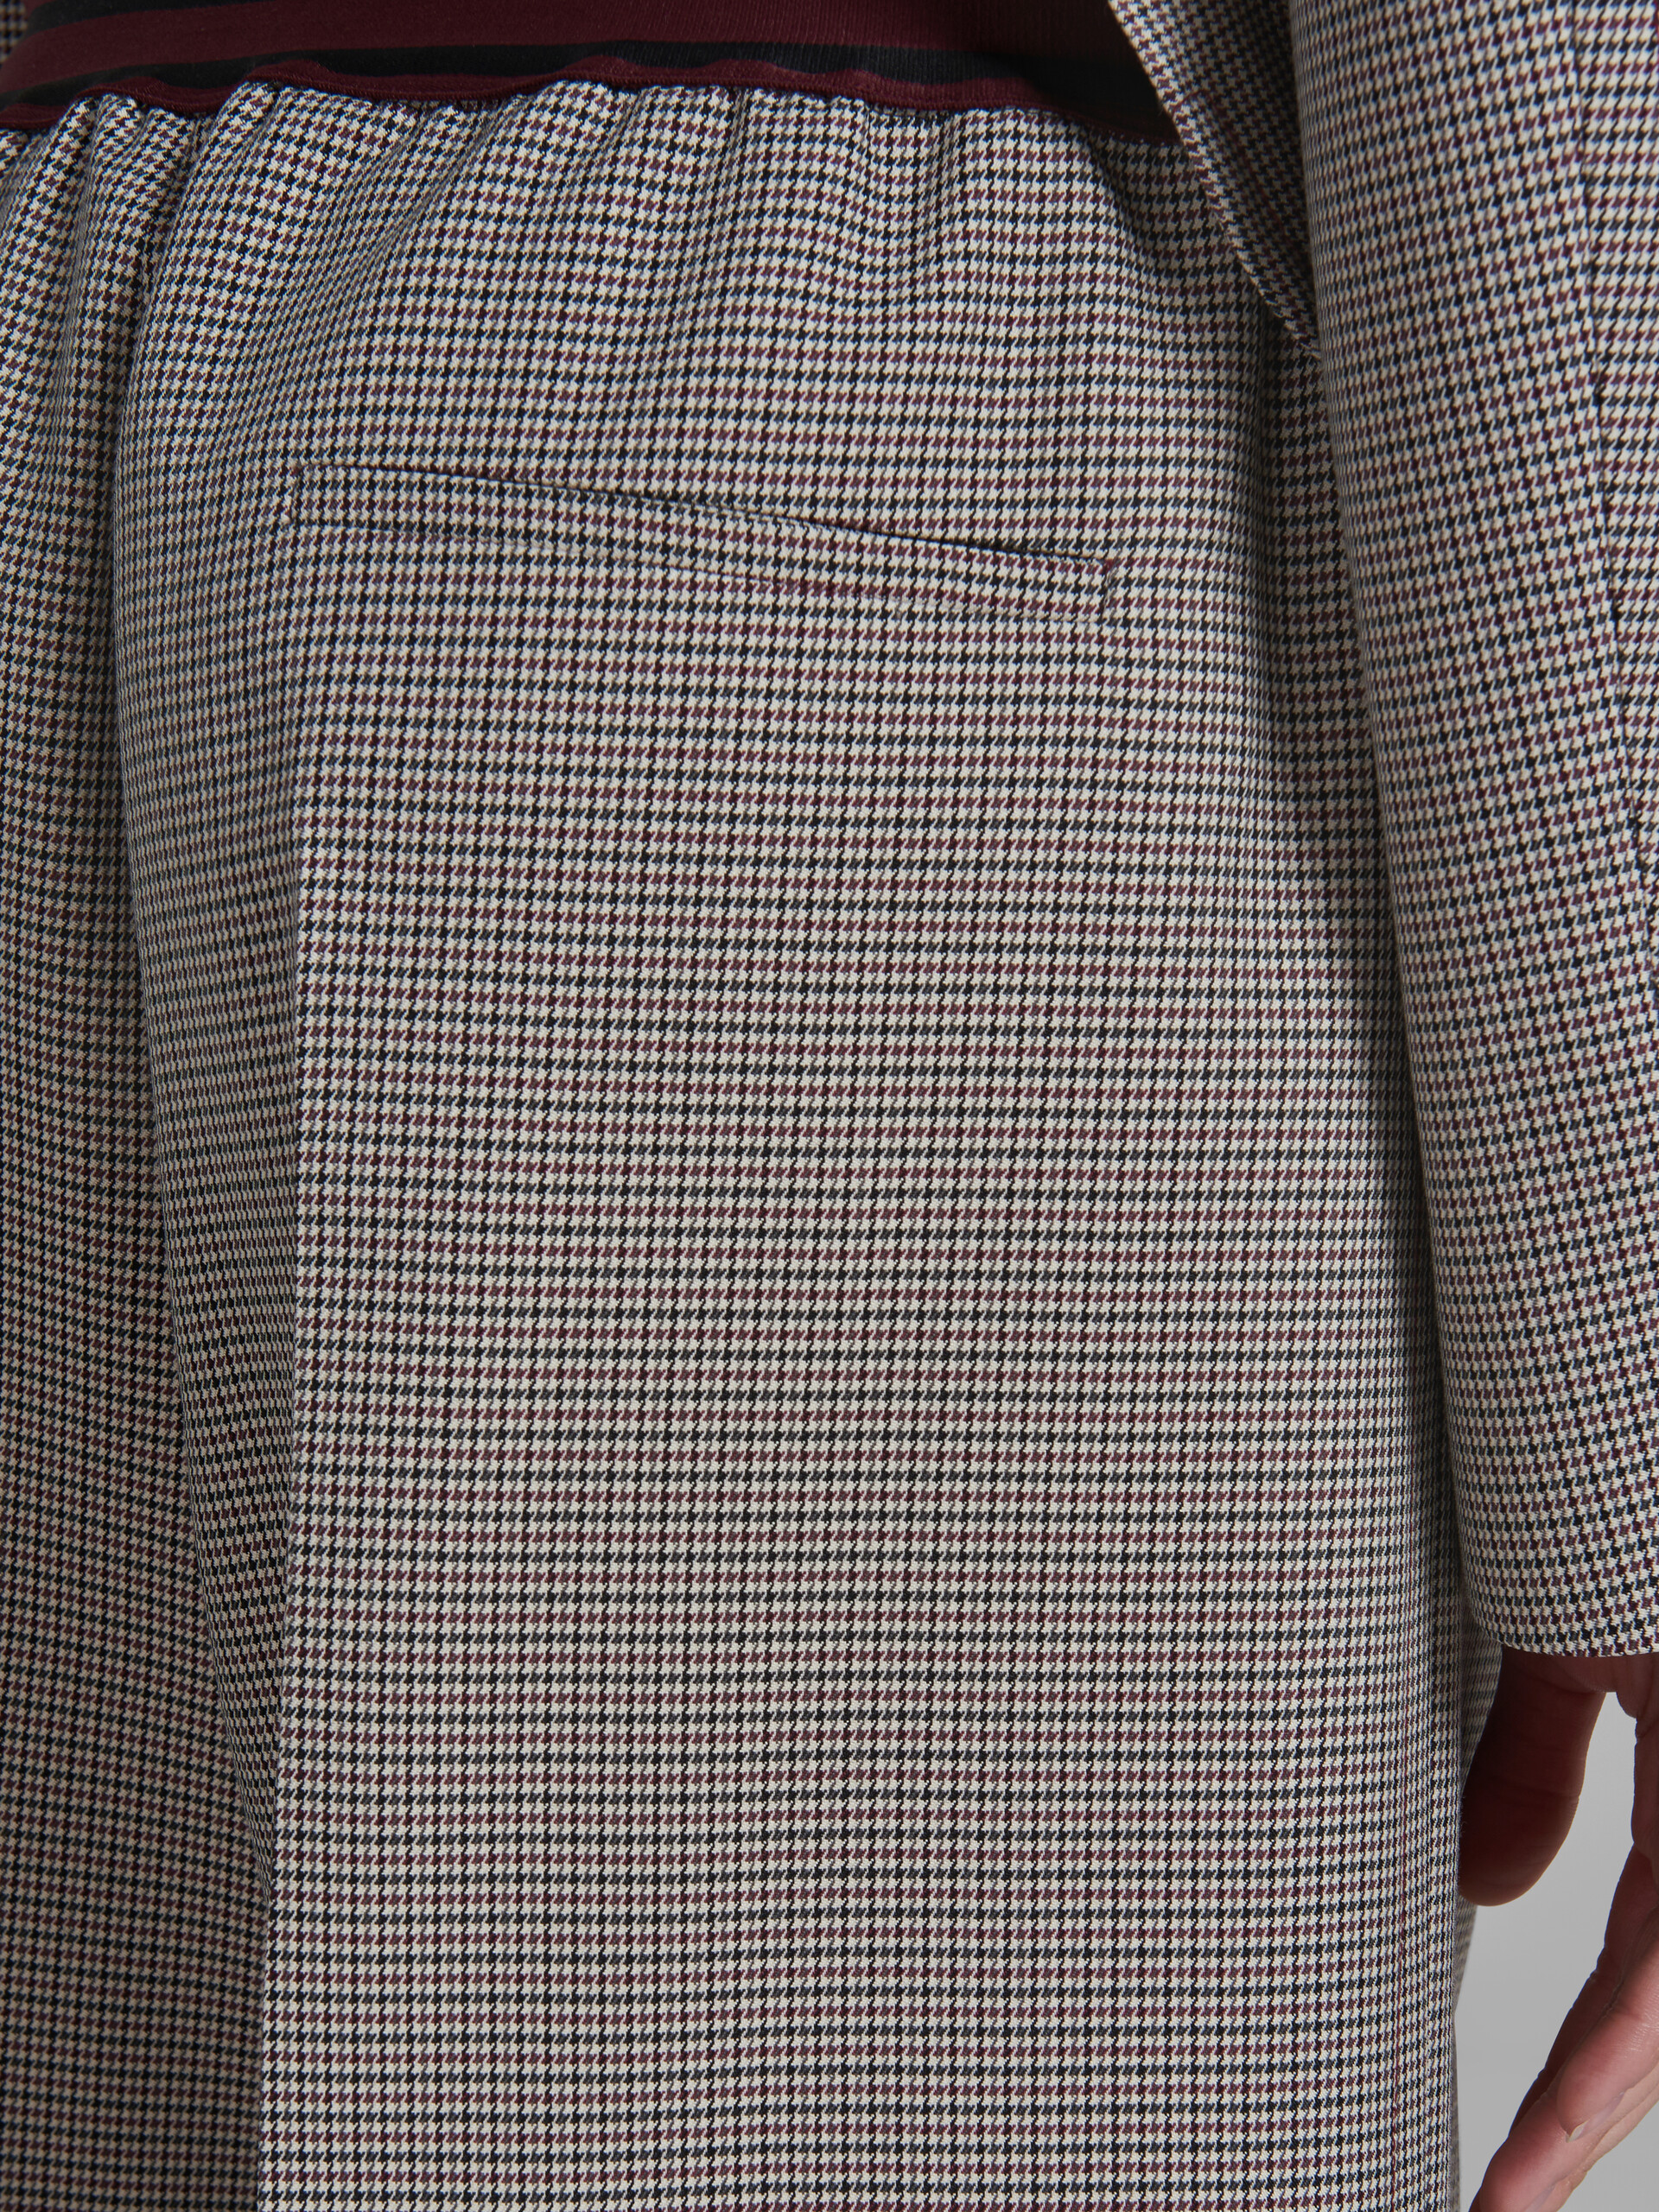 Pantalones grises y rojos de cuadros de pata de gallo con logotipo en la cintura - Pantalones - Image 5